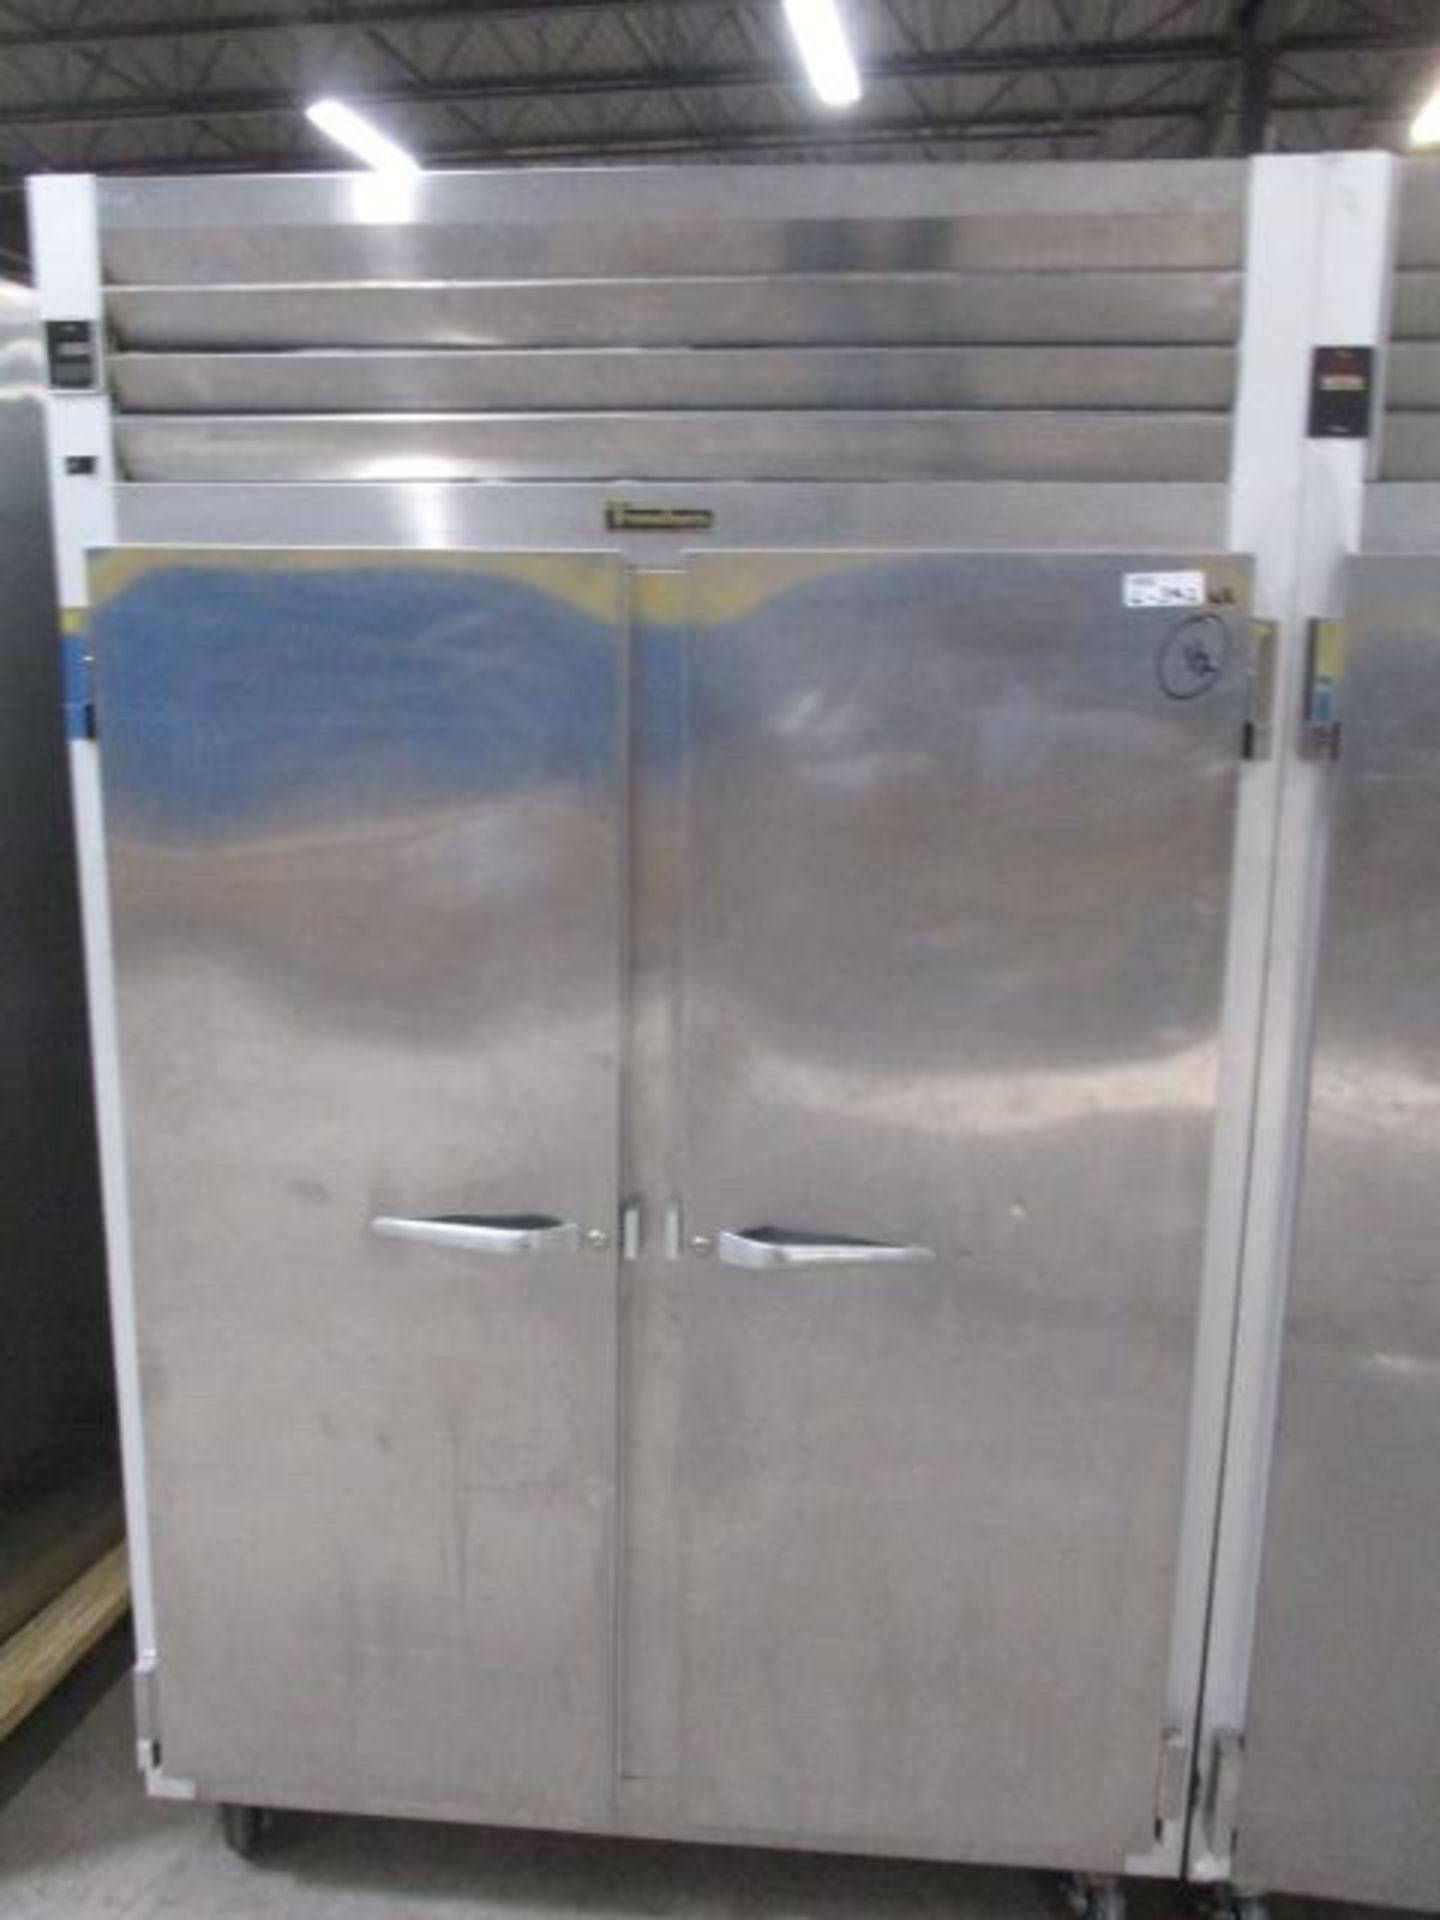 lot of 2 traulsen 2 door freezers (not working) - Image 2 of 3